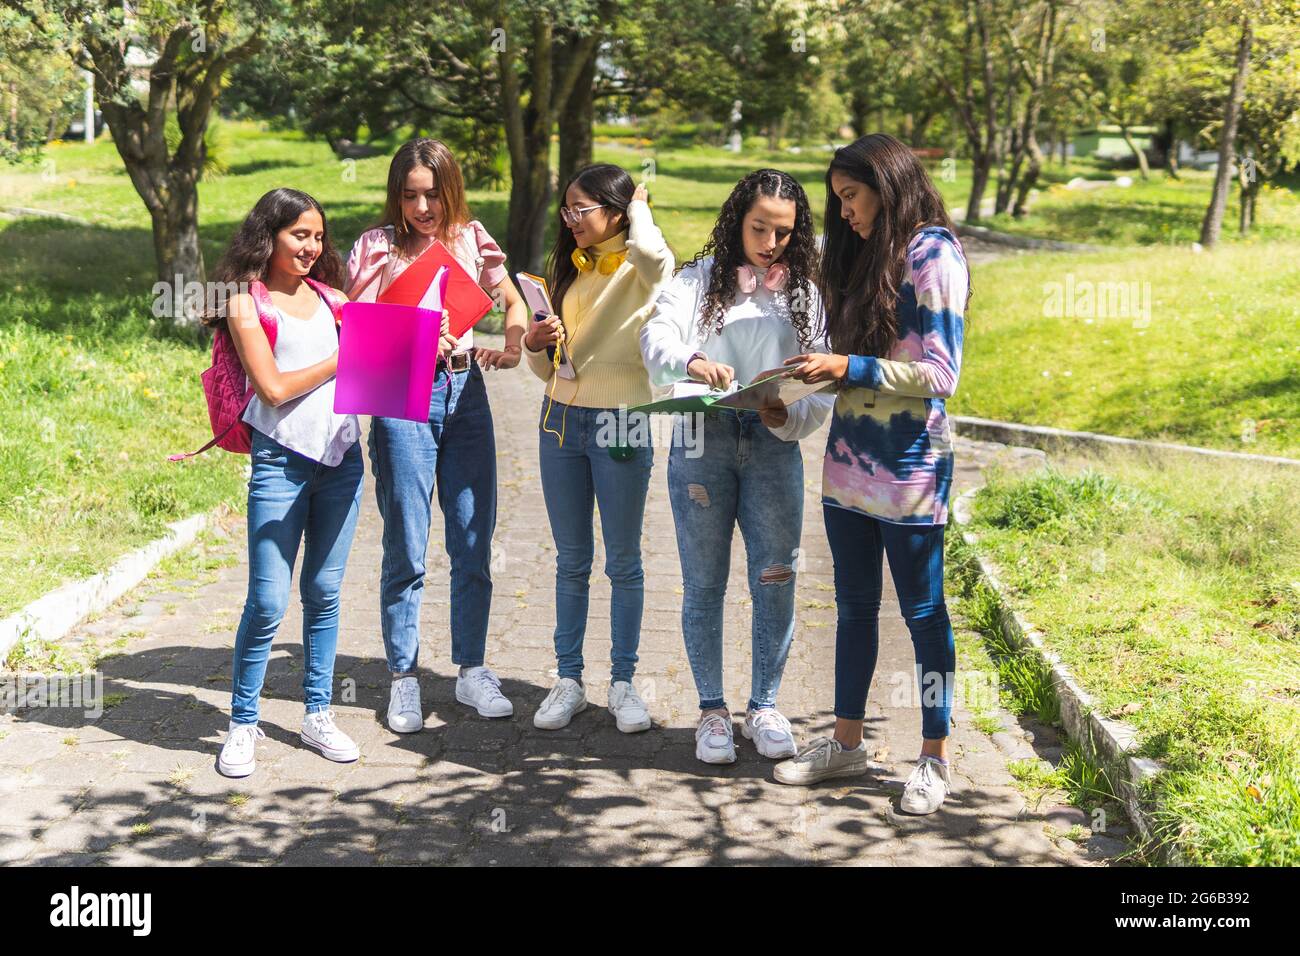 Groupe d'étudiants latino-américains adolescents avec leurs sacs à dos et leurs carnets examinant leurs devoirs à l'extérieur. Concept de retour à l'école Banque D'Images